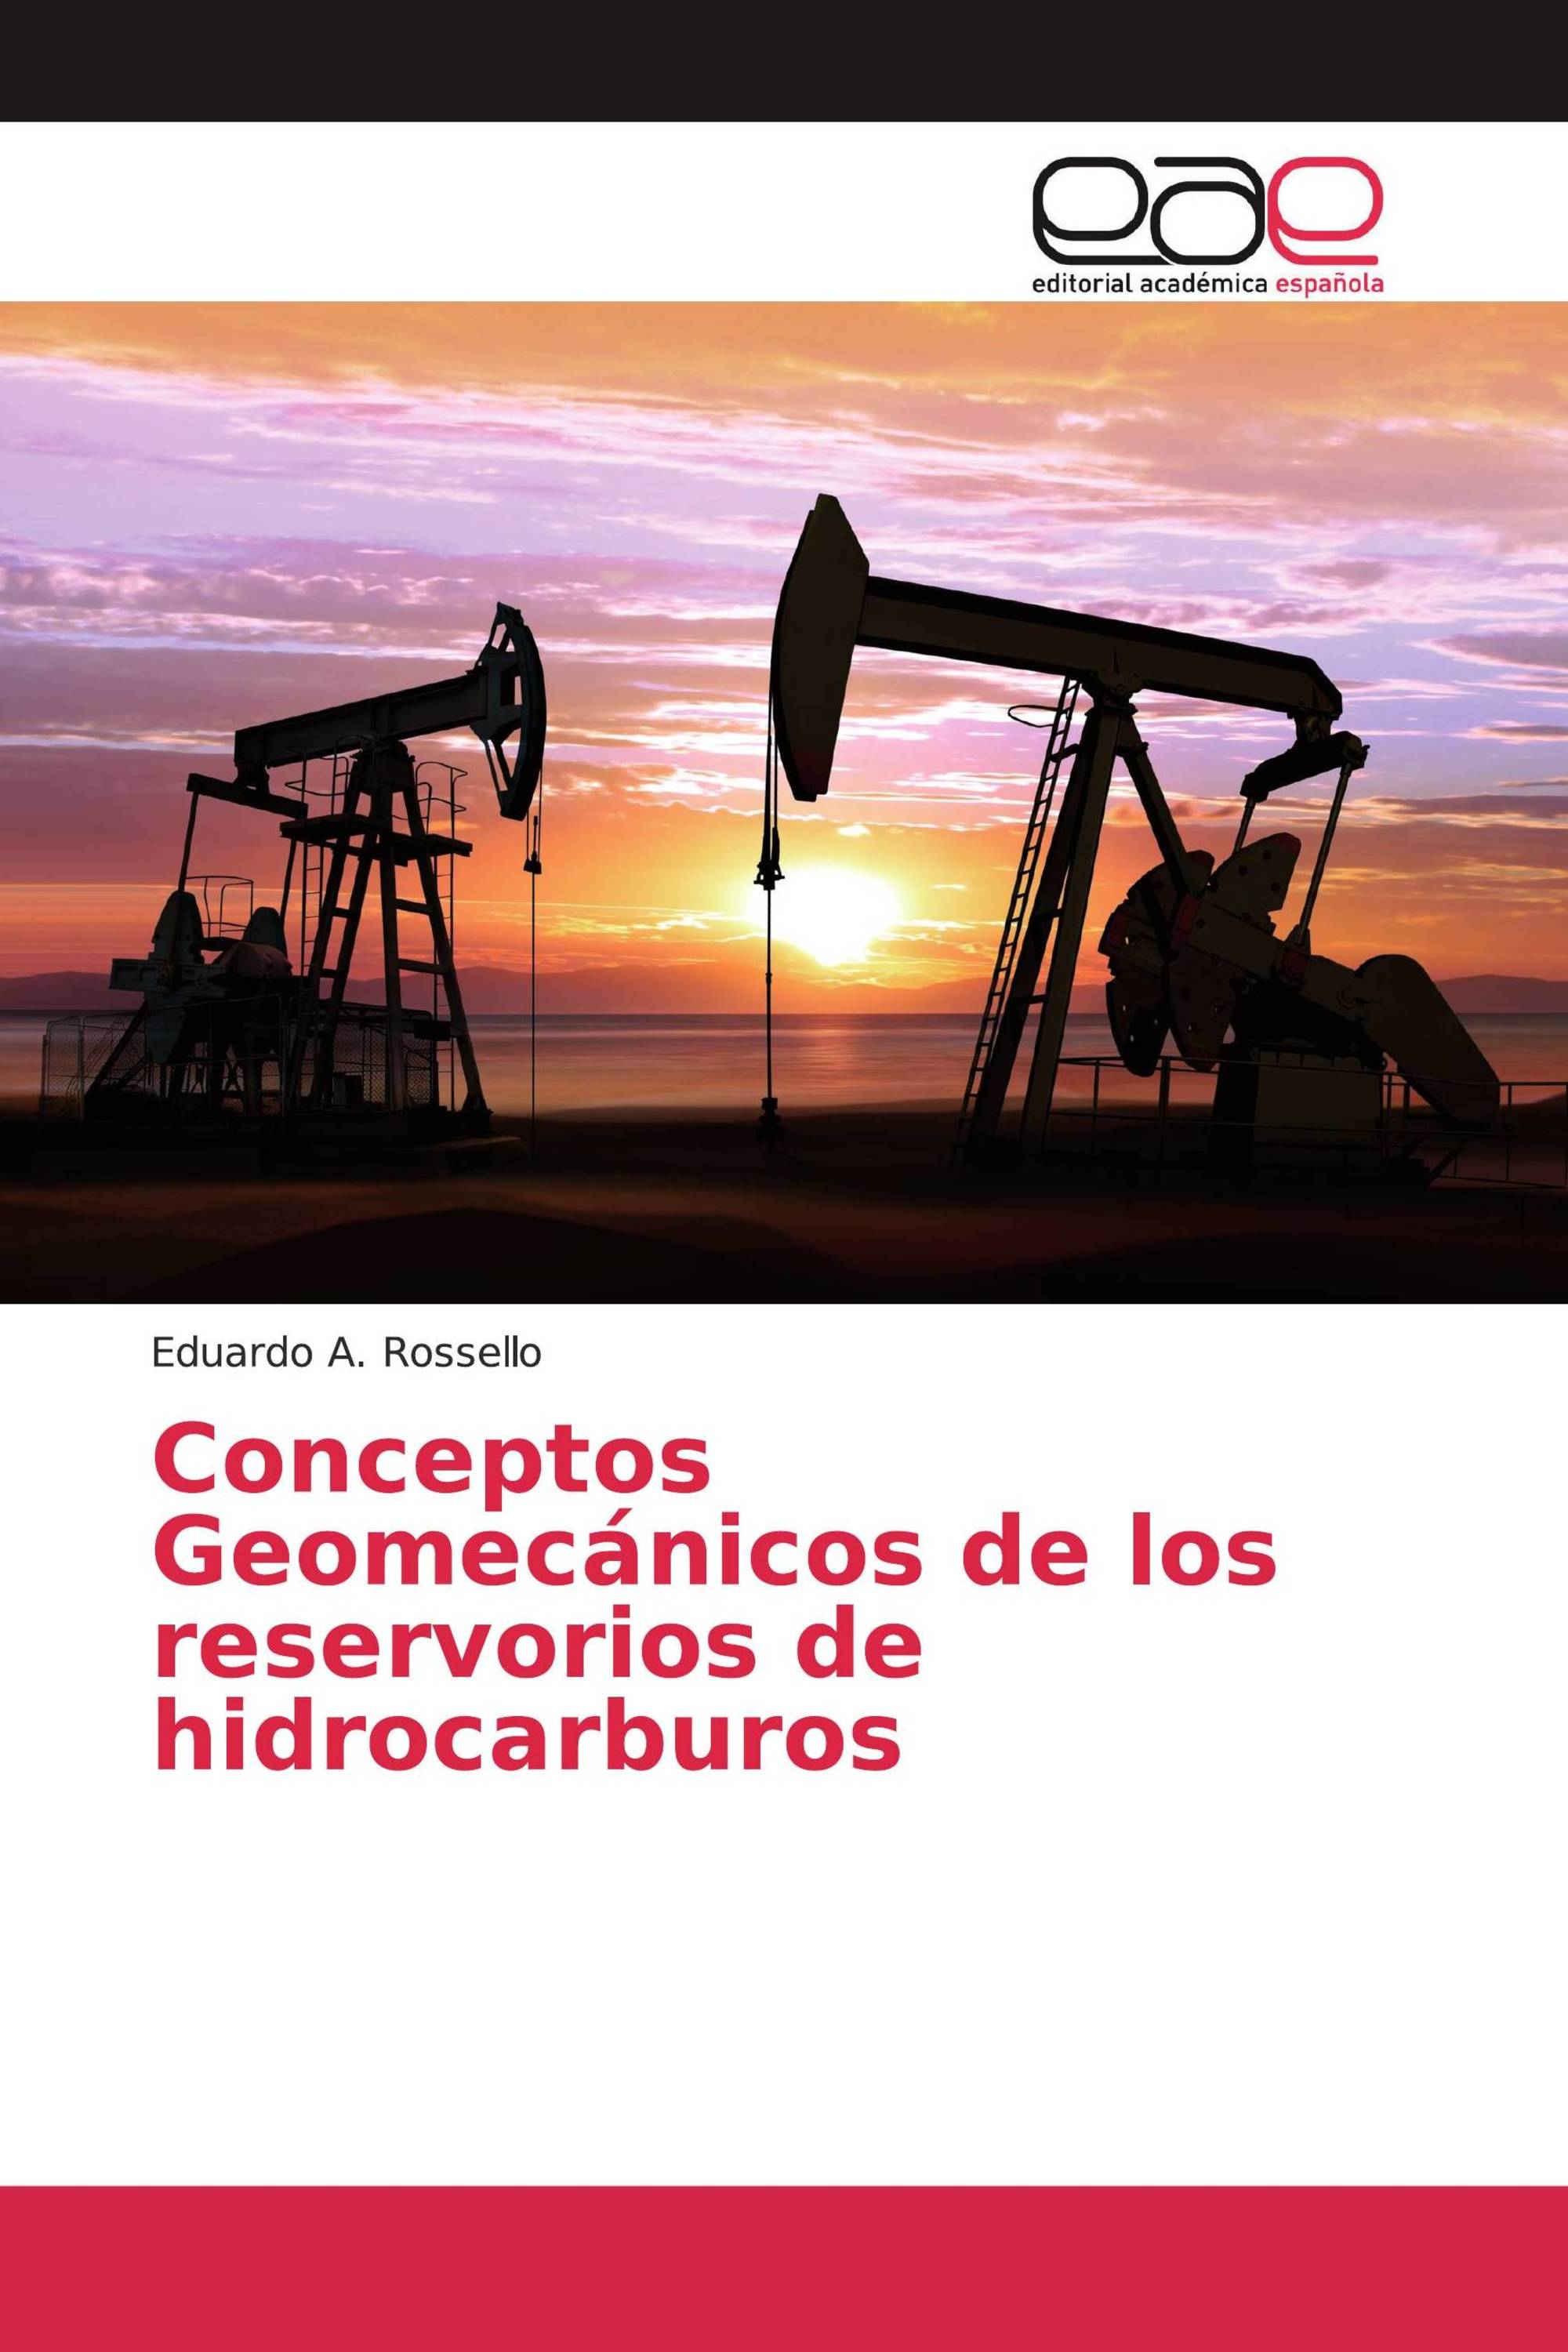 Conceptos Geomecánicos de los reservorios de hidrocarburos